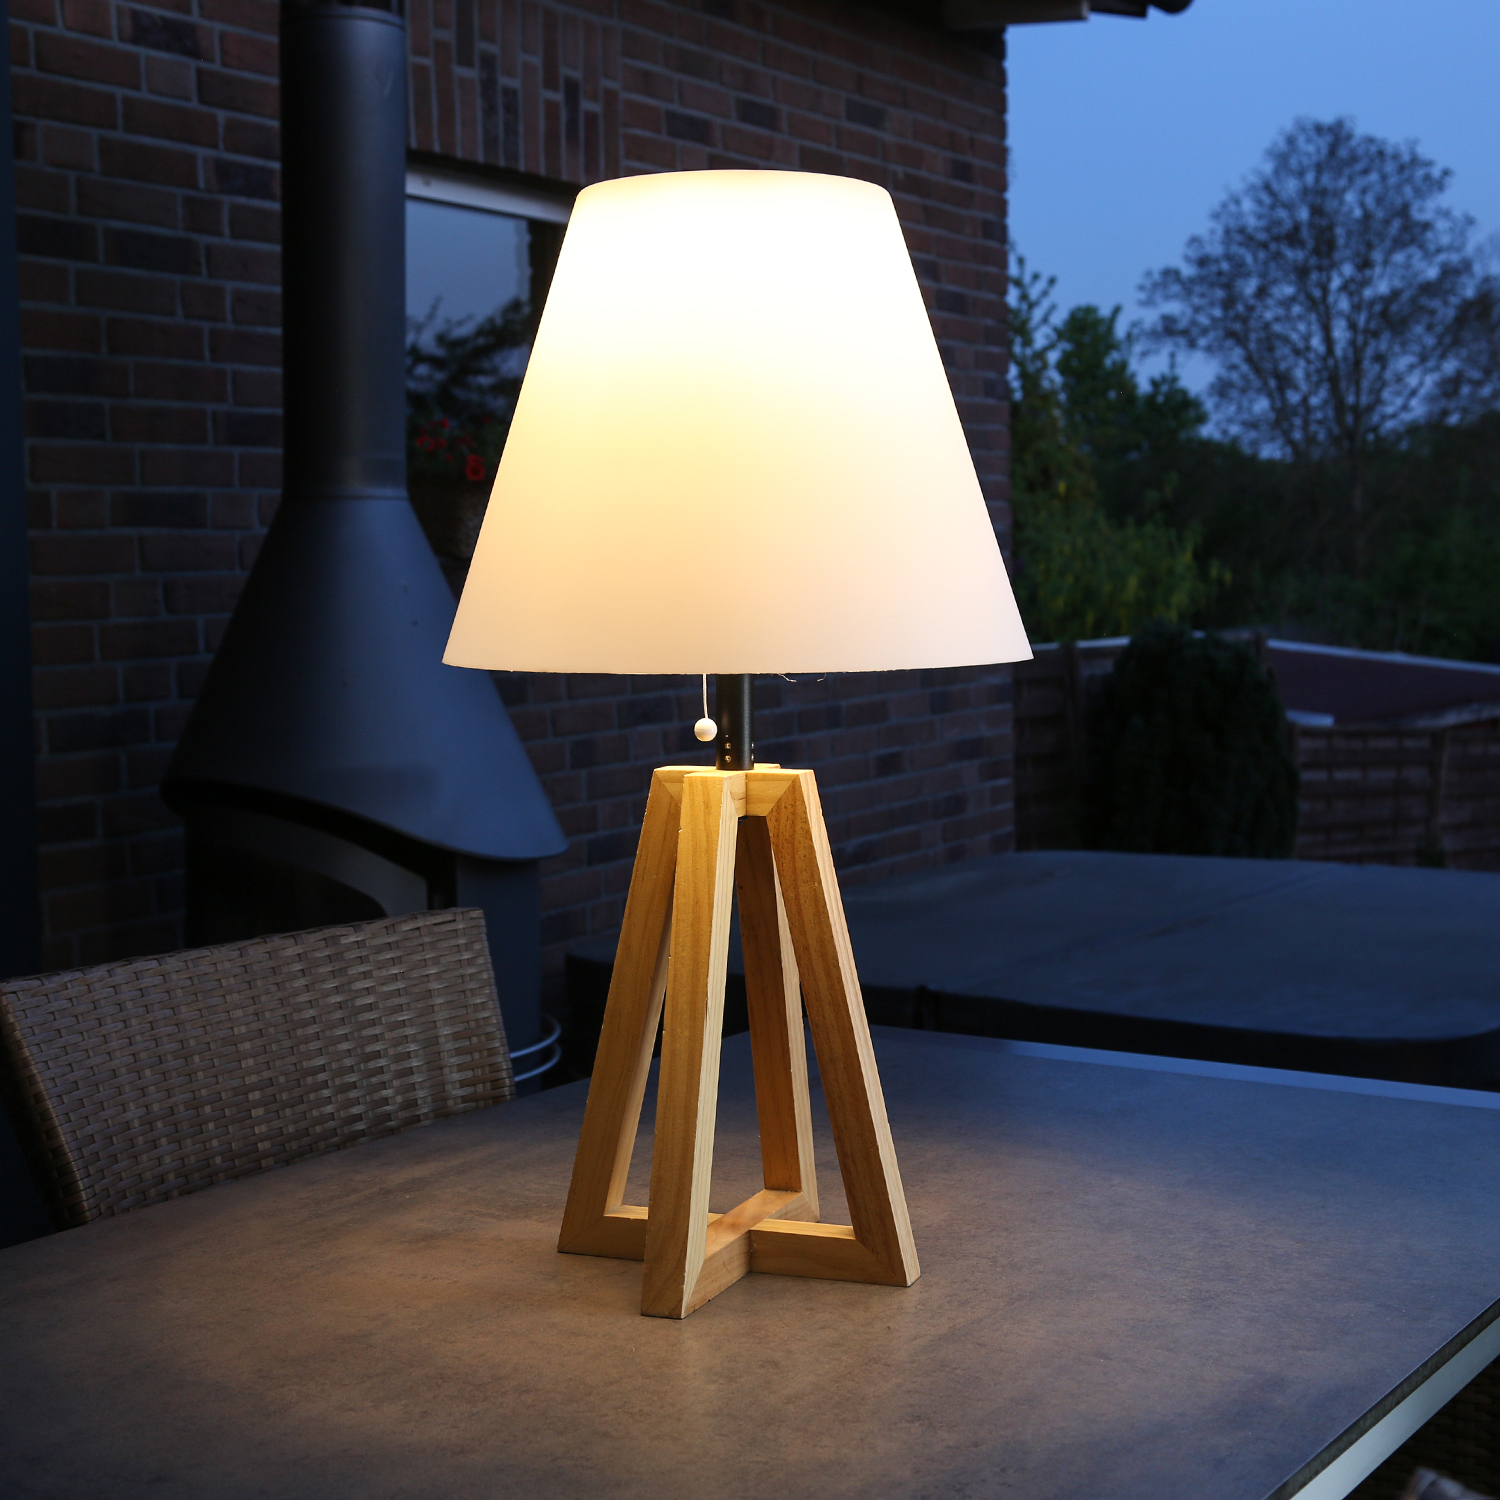 LED Solar Dekoleuchte - Kugellampe im Stein - Polyresin - 3 warmweiße LED -  H: 21cm - beige